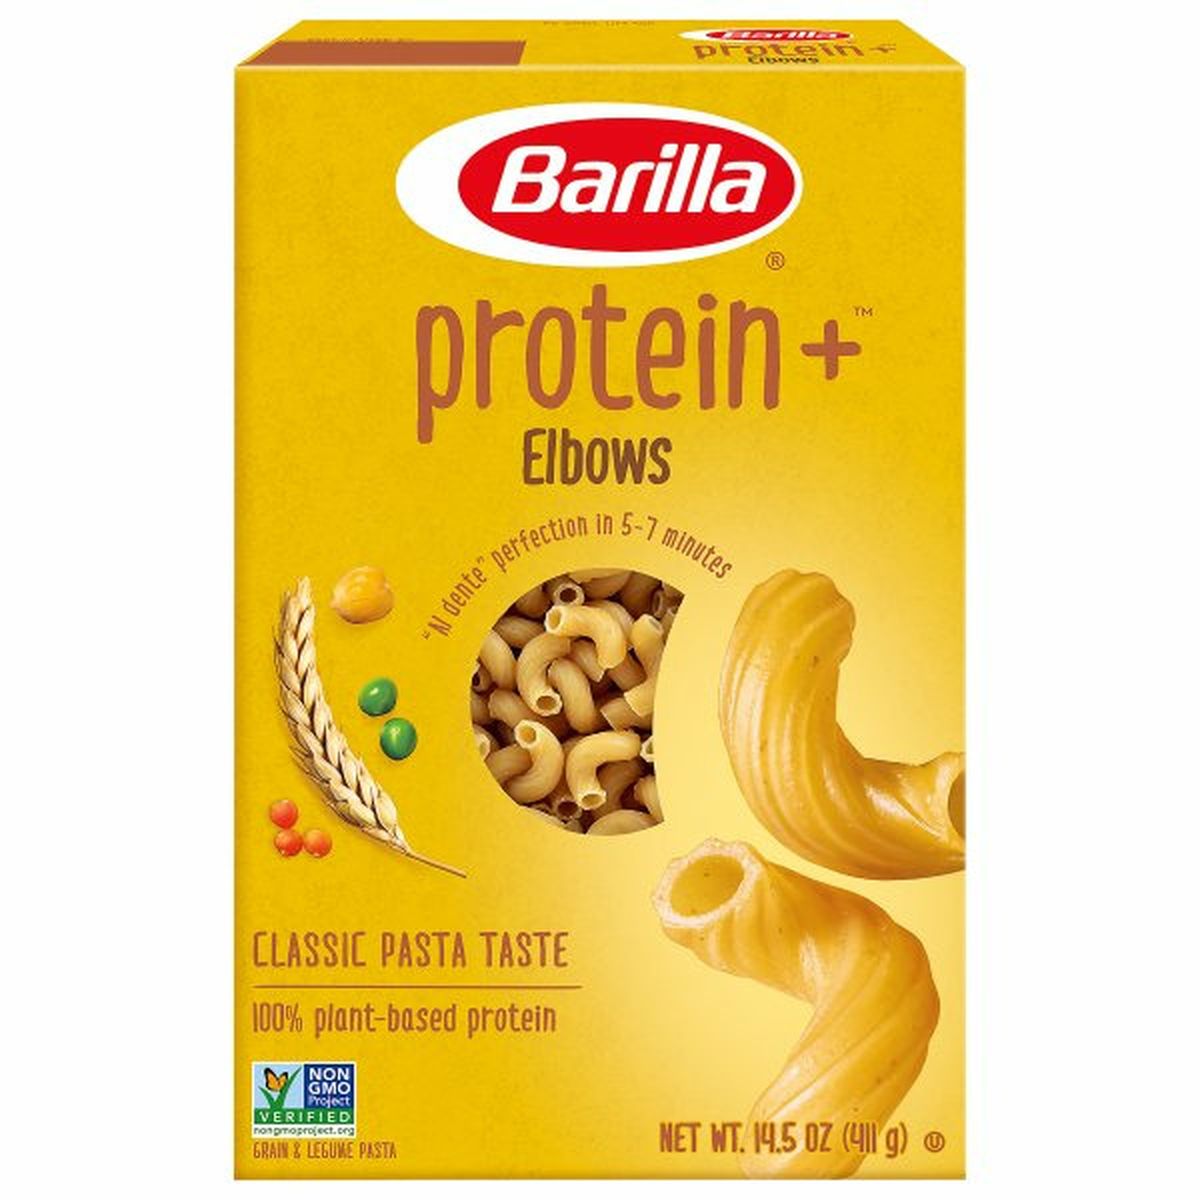 Calories in Barillas Protein+ Elbows